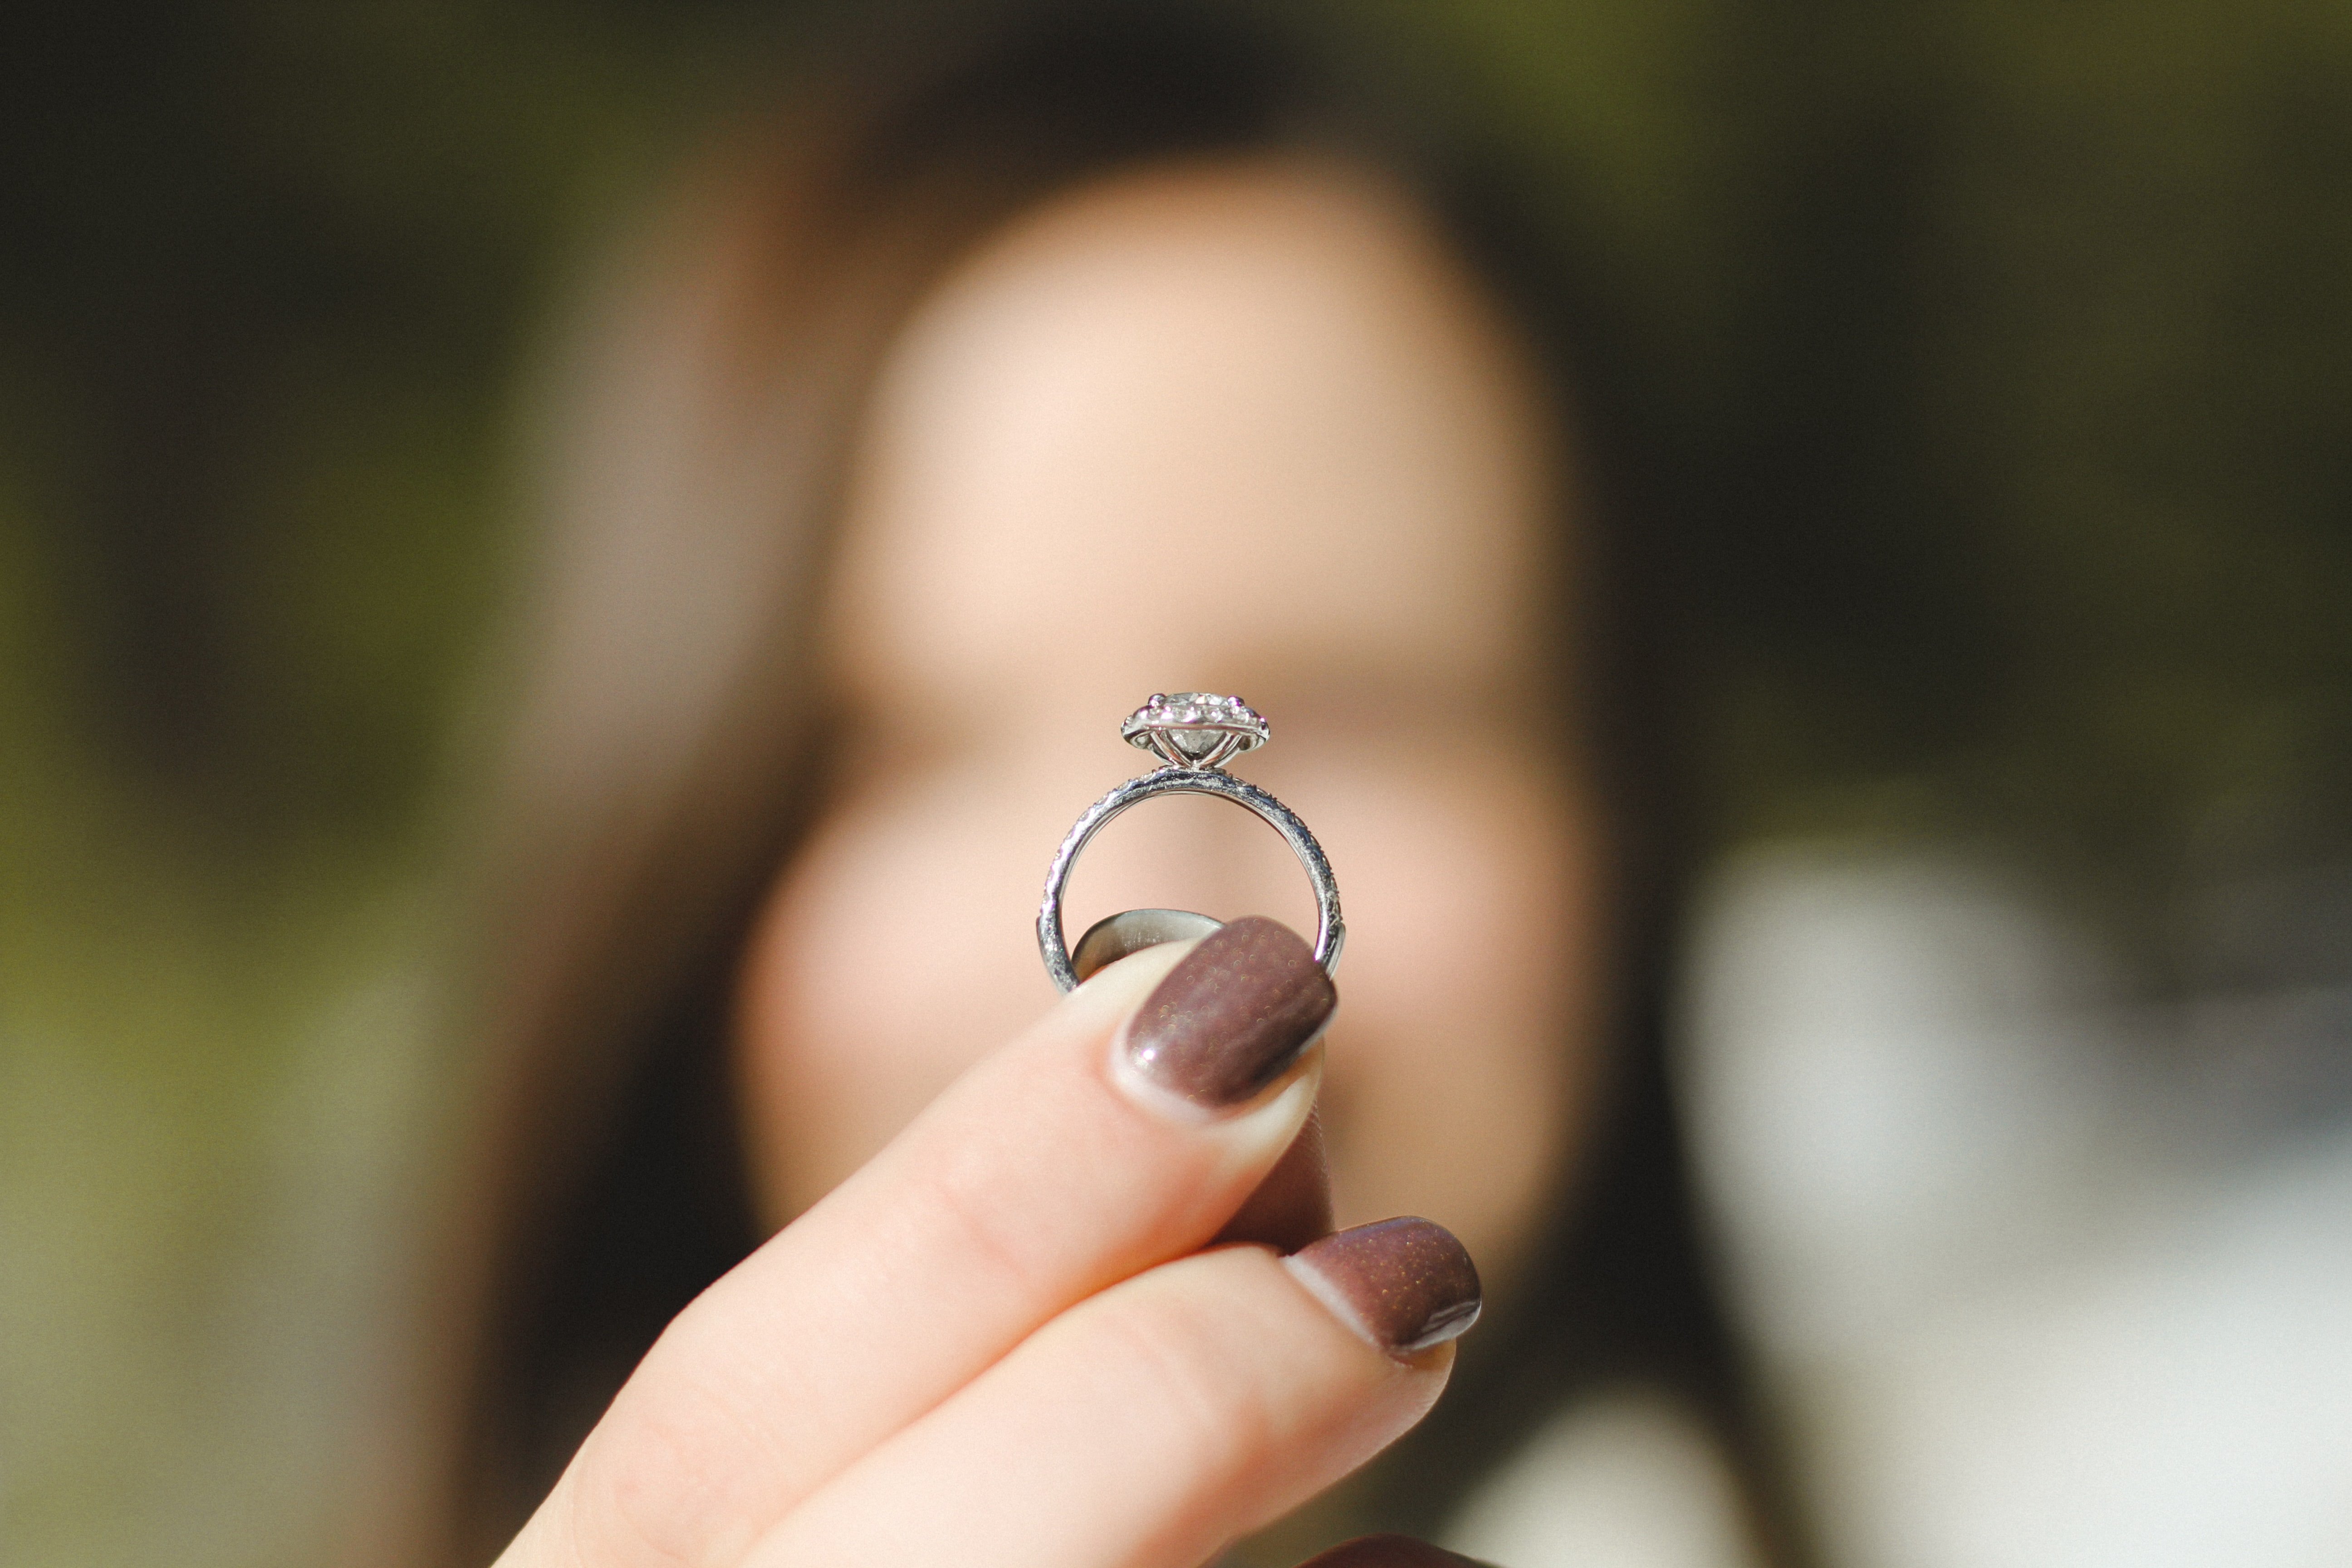 OP vermutete, dass Don sie hätte bitten können, den Ring auszuwählen, da ihr Geschmack dem ihrer besten Freundin entsprach. | Quelle: Unsplash